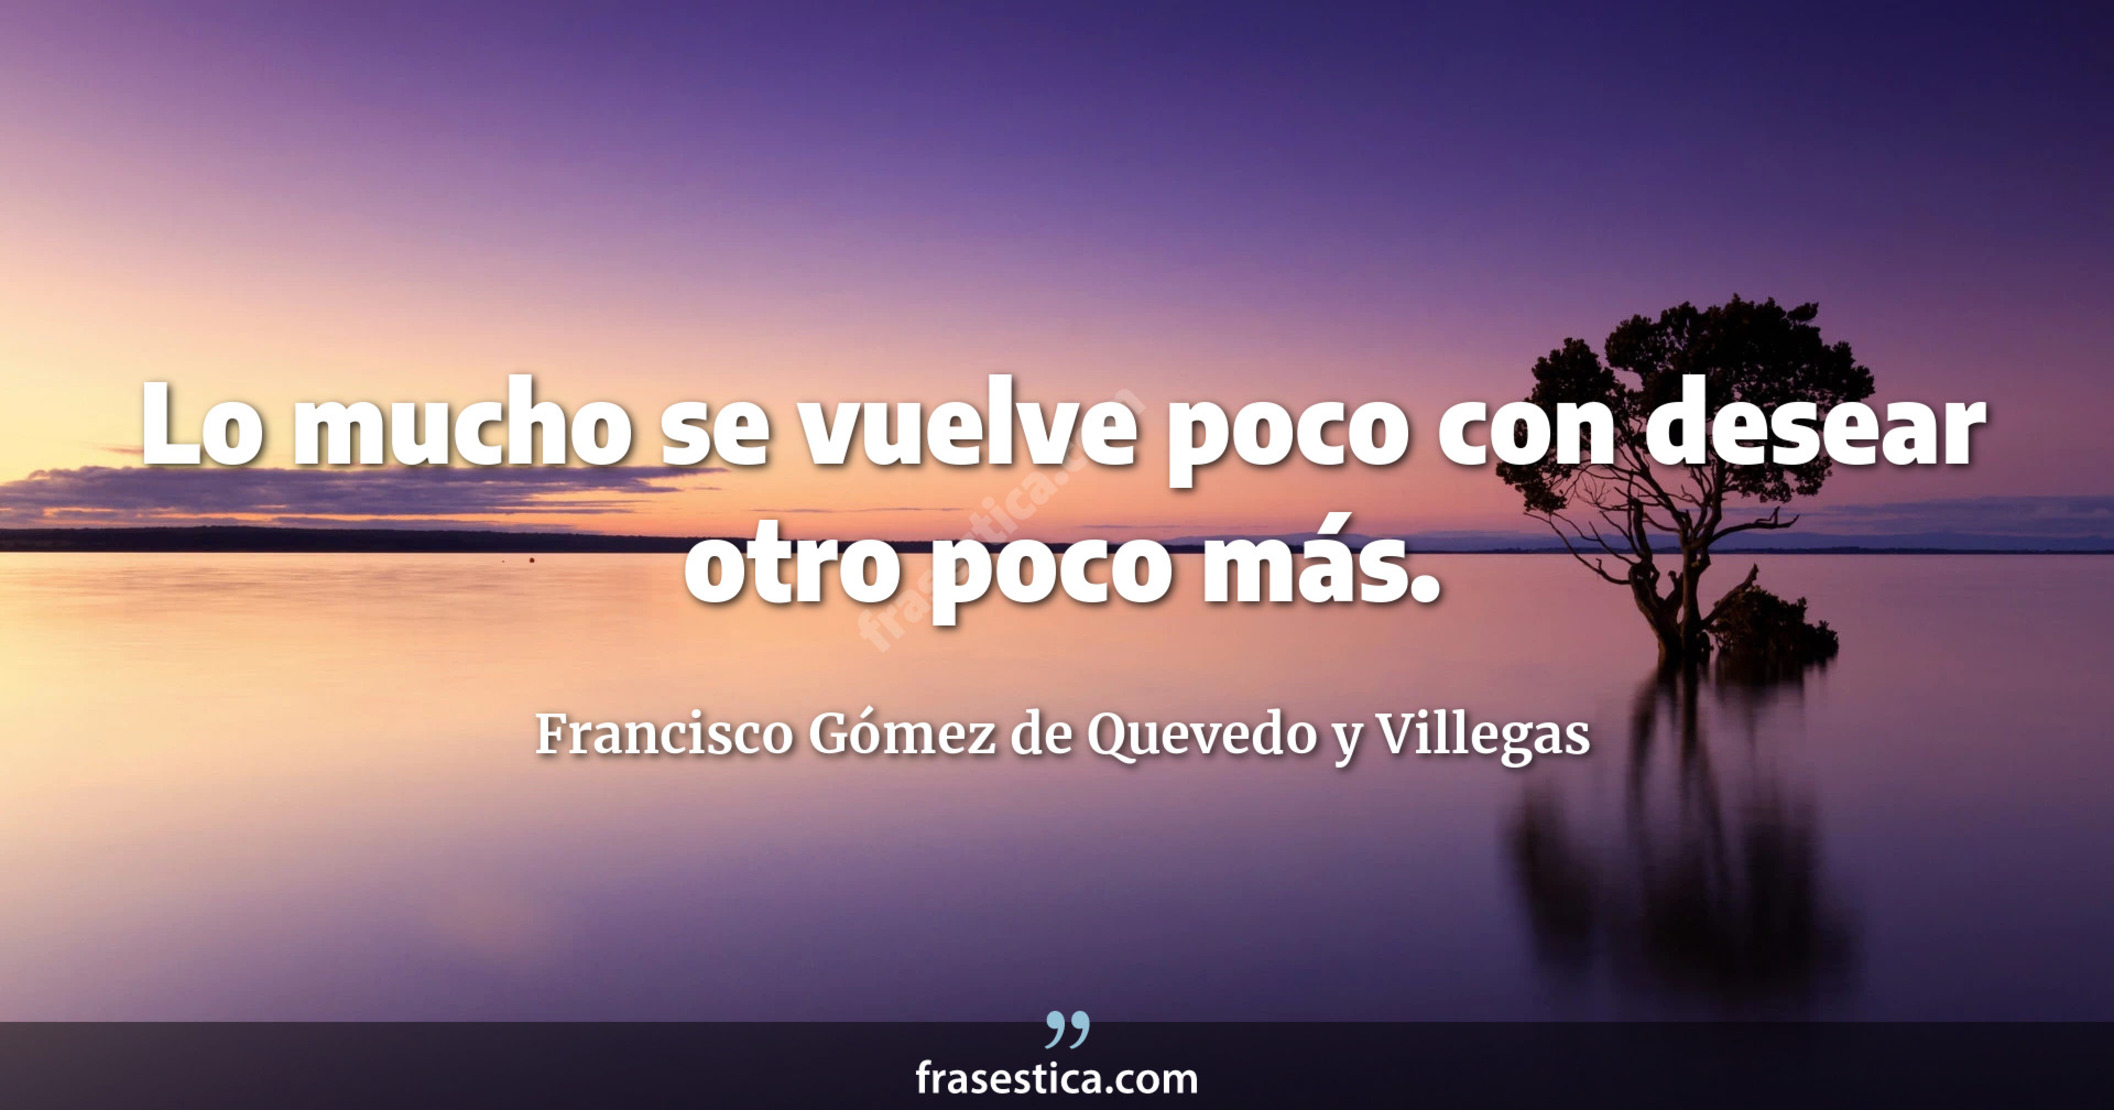 Lo mucho se vuelve poco con desear otro poco más. - Francisco Gómez de Quevedo y Villegas